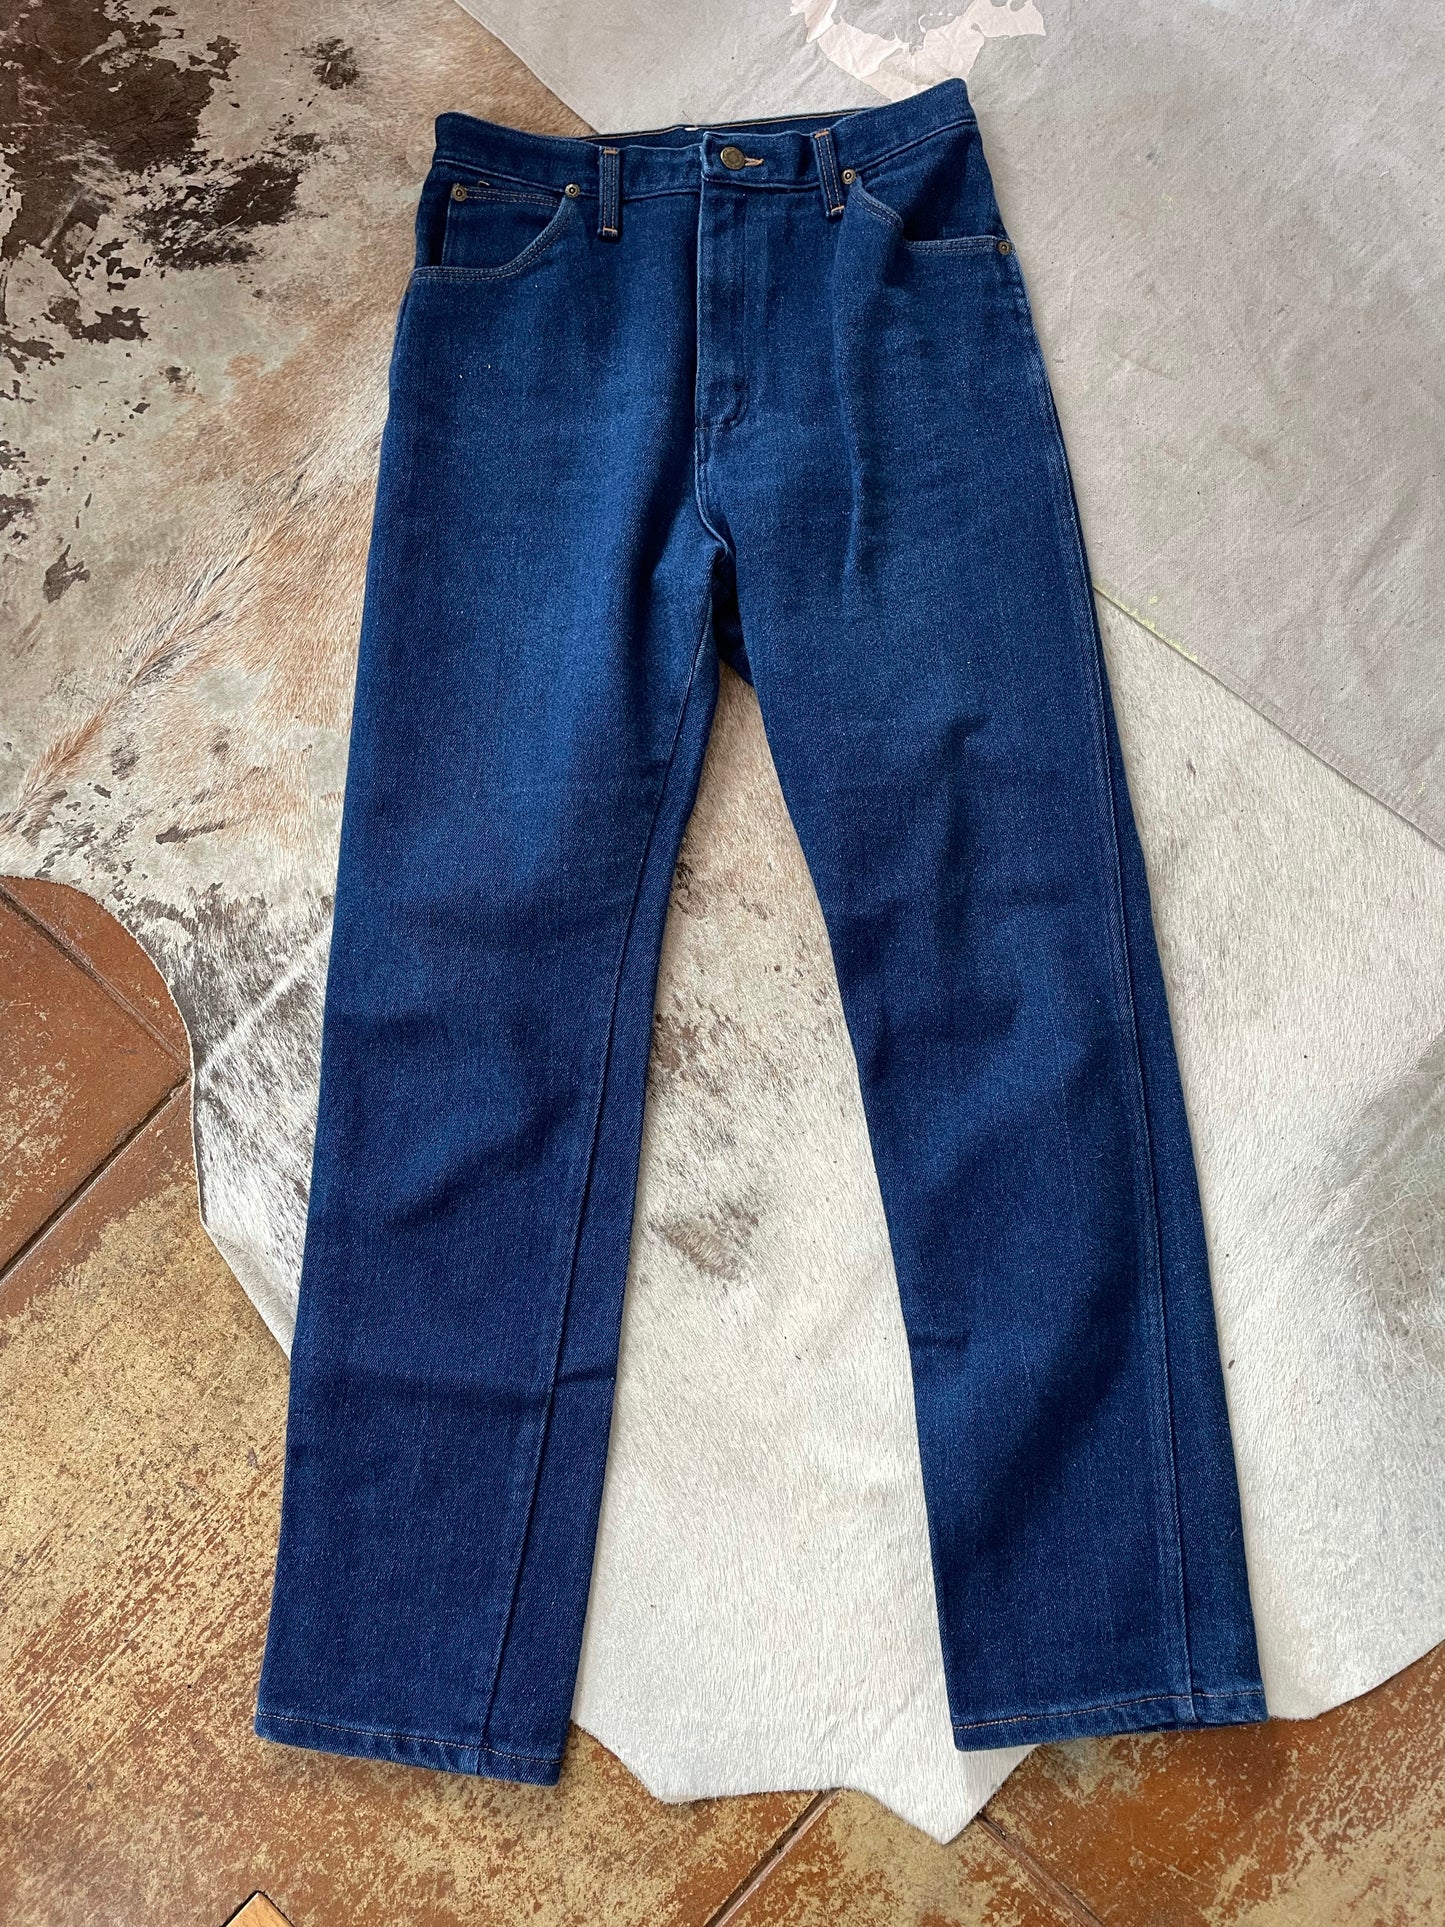 70s/80s Wrangler Jeans